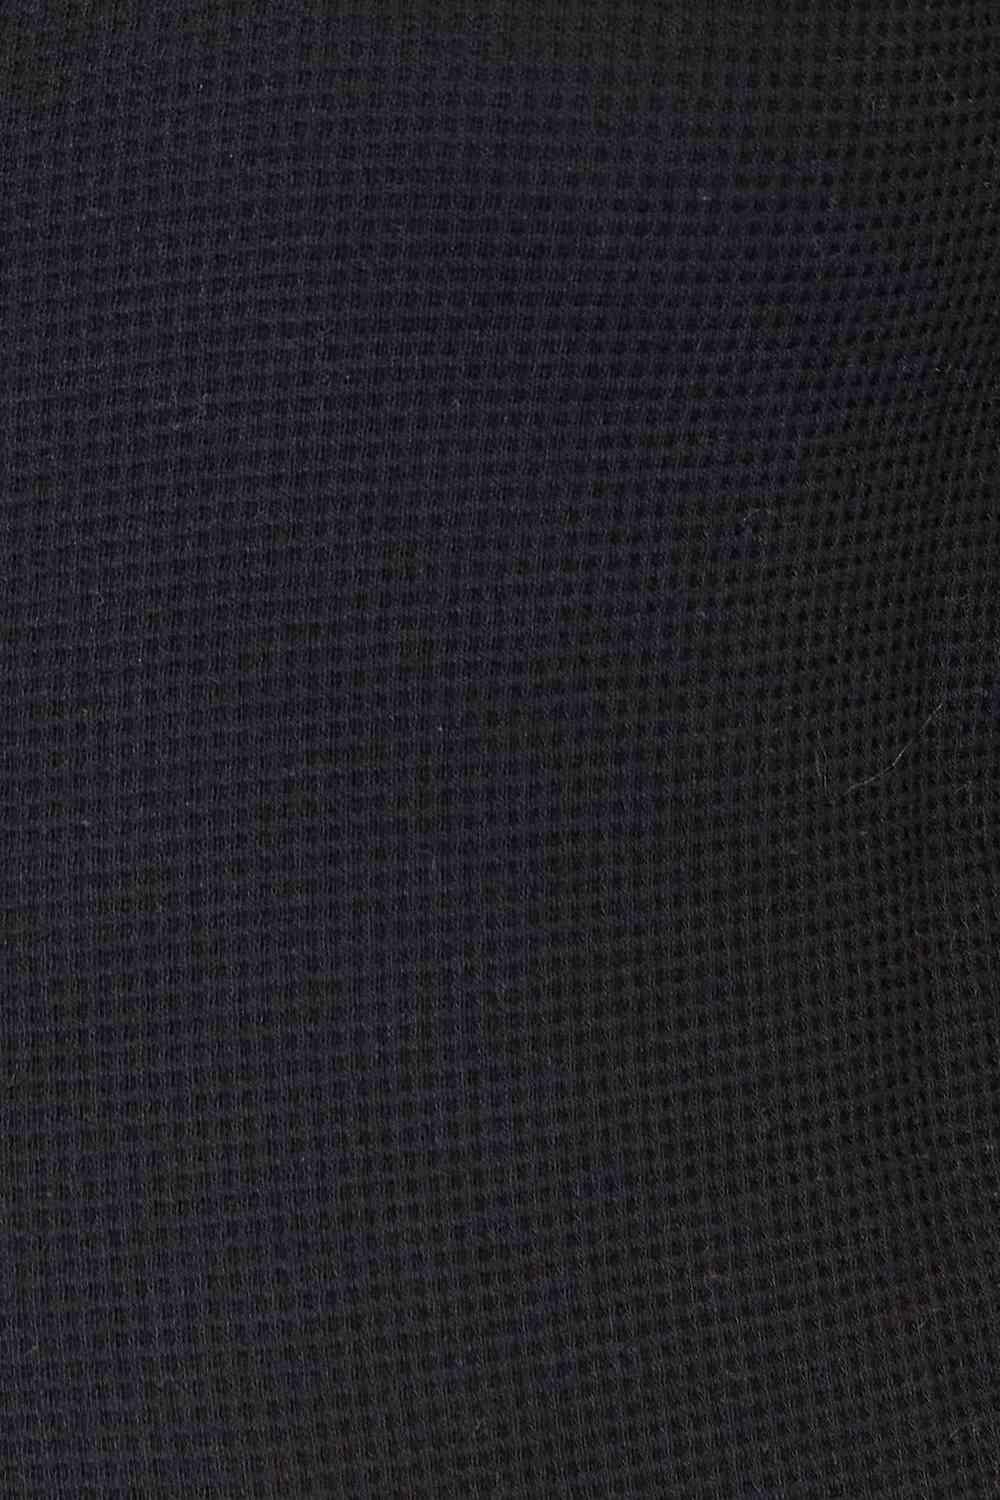 Dropped Shoulder Plaid Print Plus Size Black Jacket - MXSTUDIO.COM